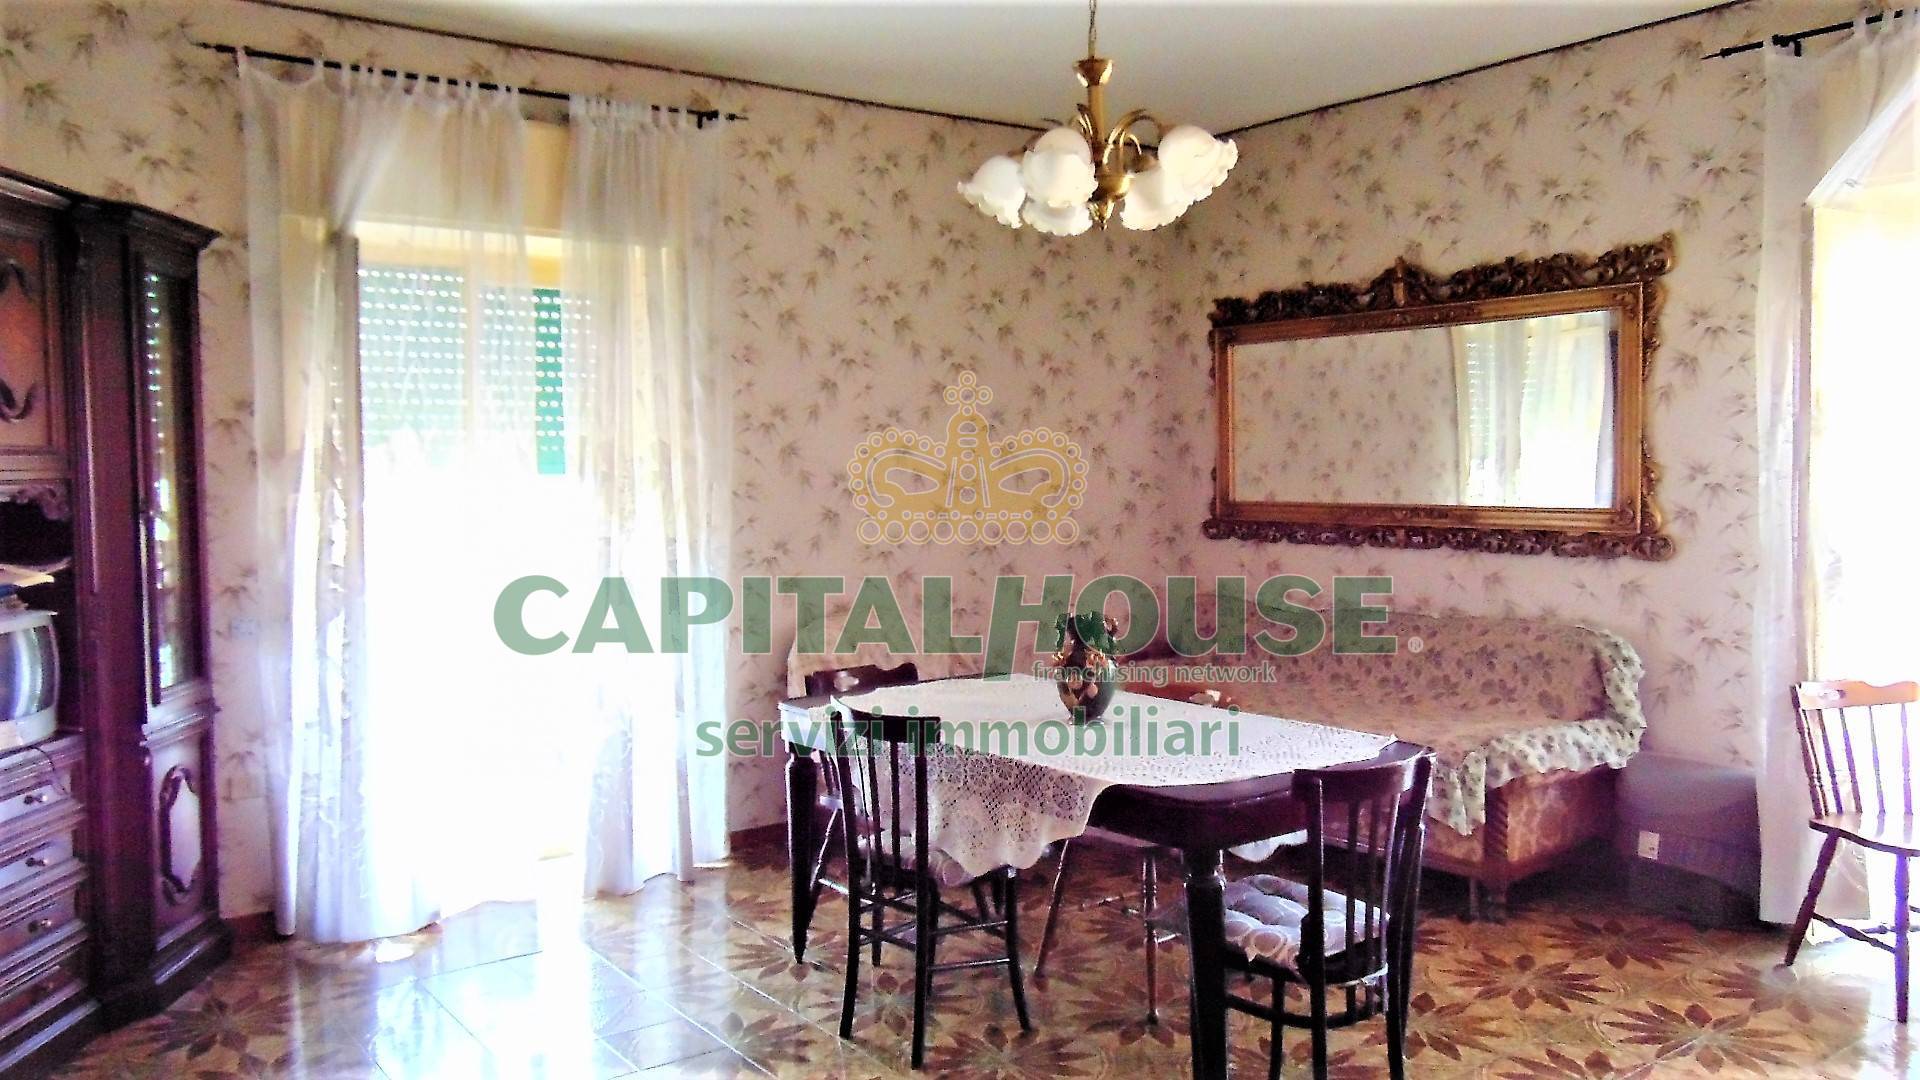 Appartamento in vendita a Sirignano, 4 locali, prezzo € 99.000 | CambioCasa.it